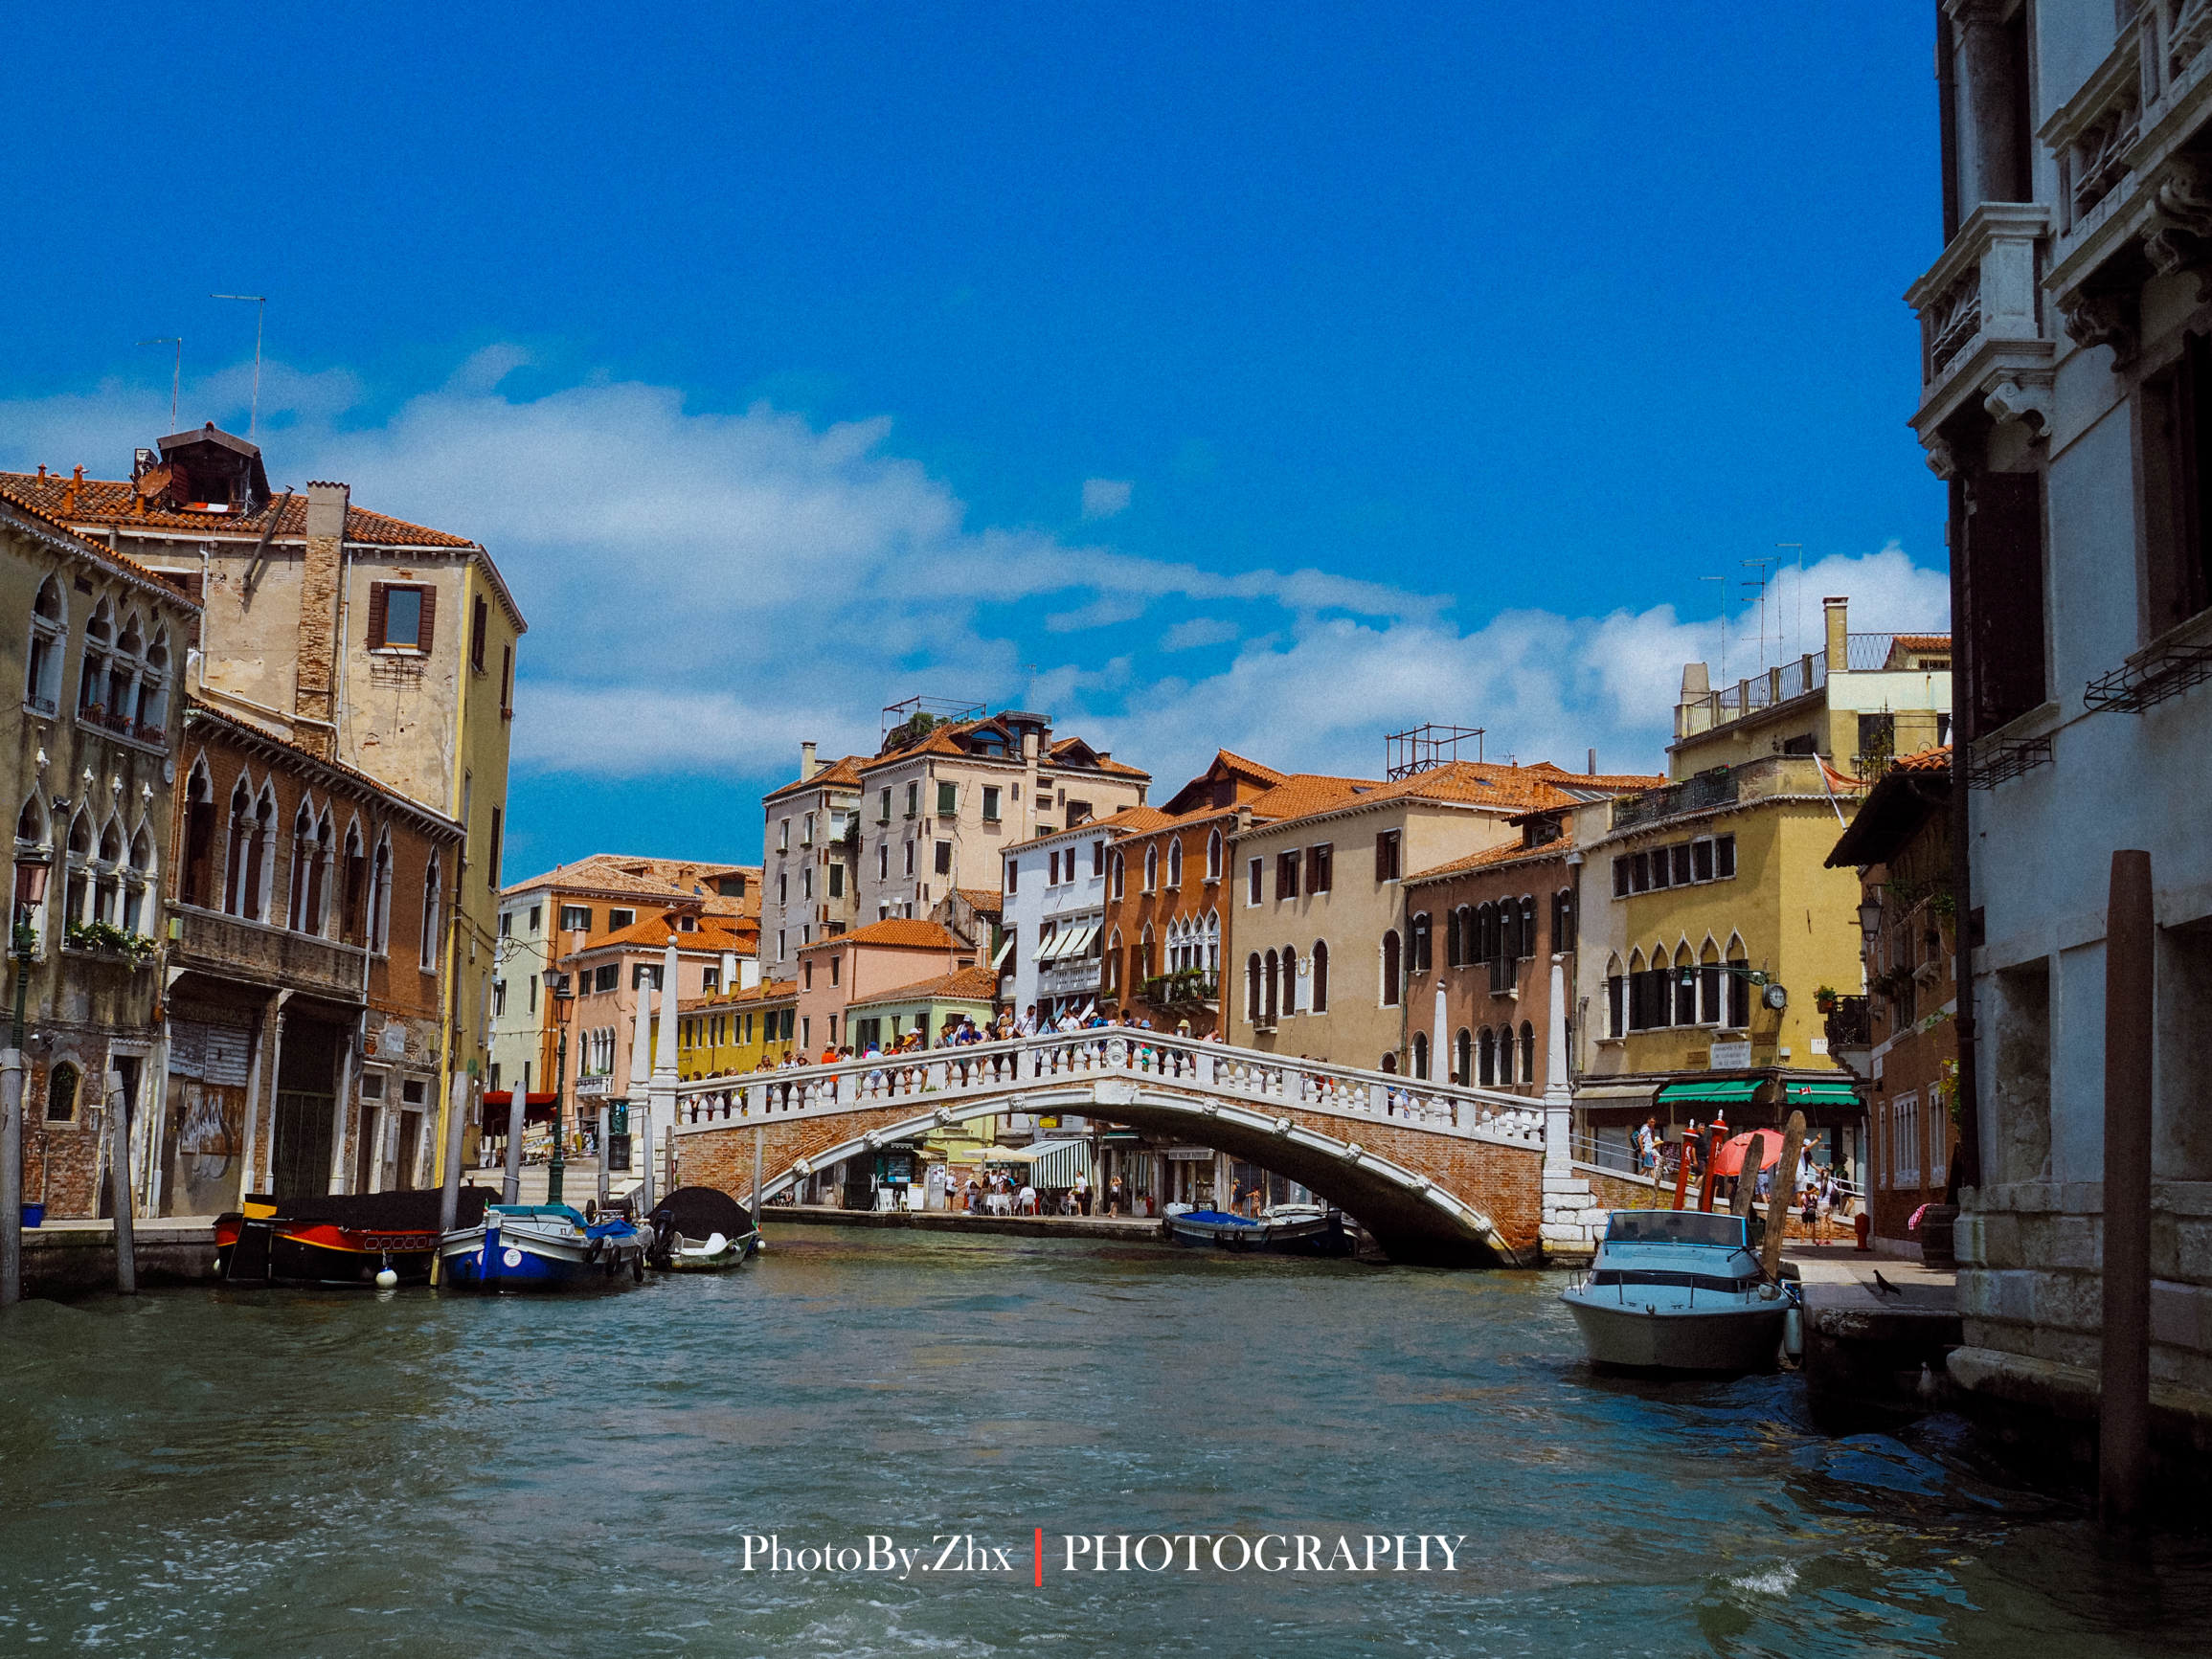 来看看一个获奖无数的大学生摄影师镜头下的水城运河威尼斯🚣